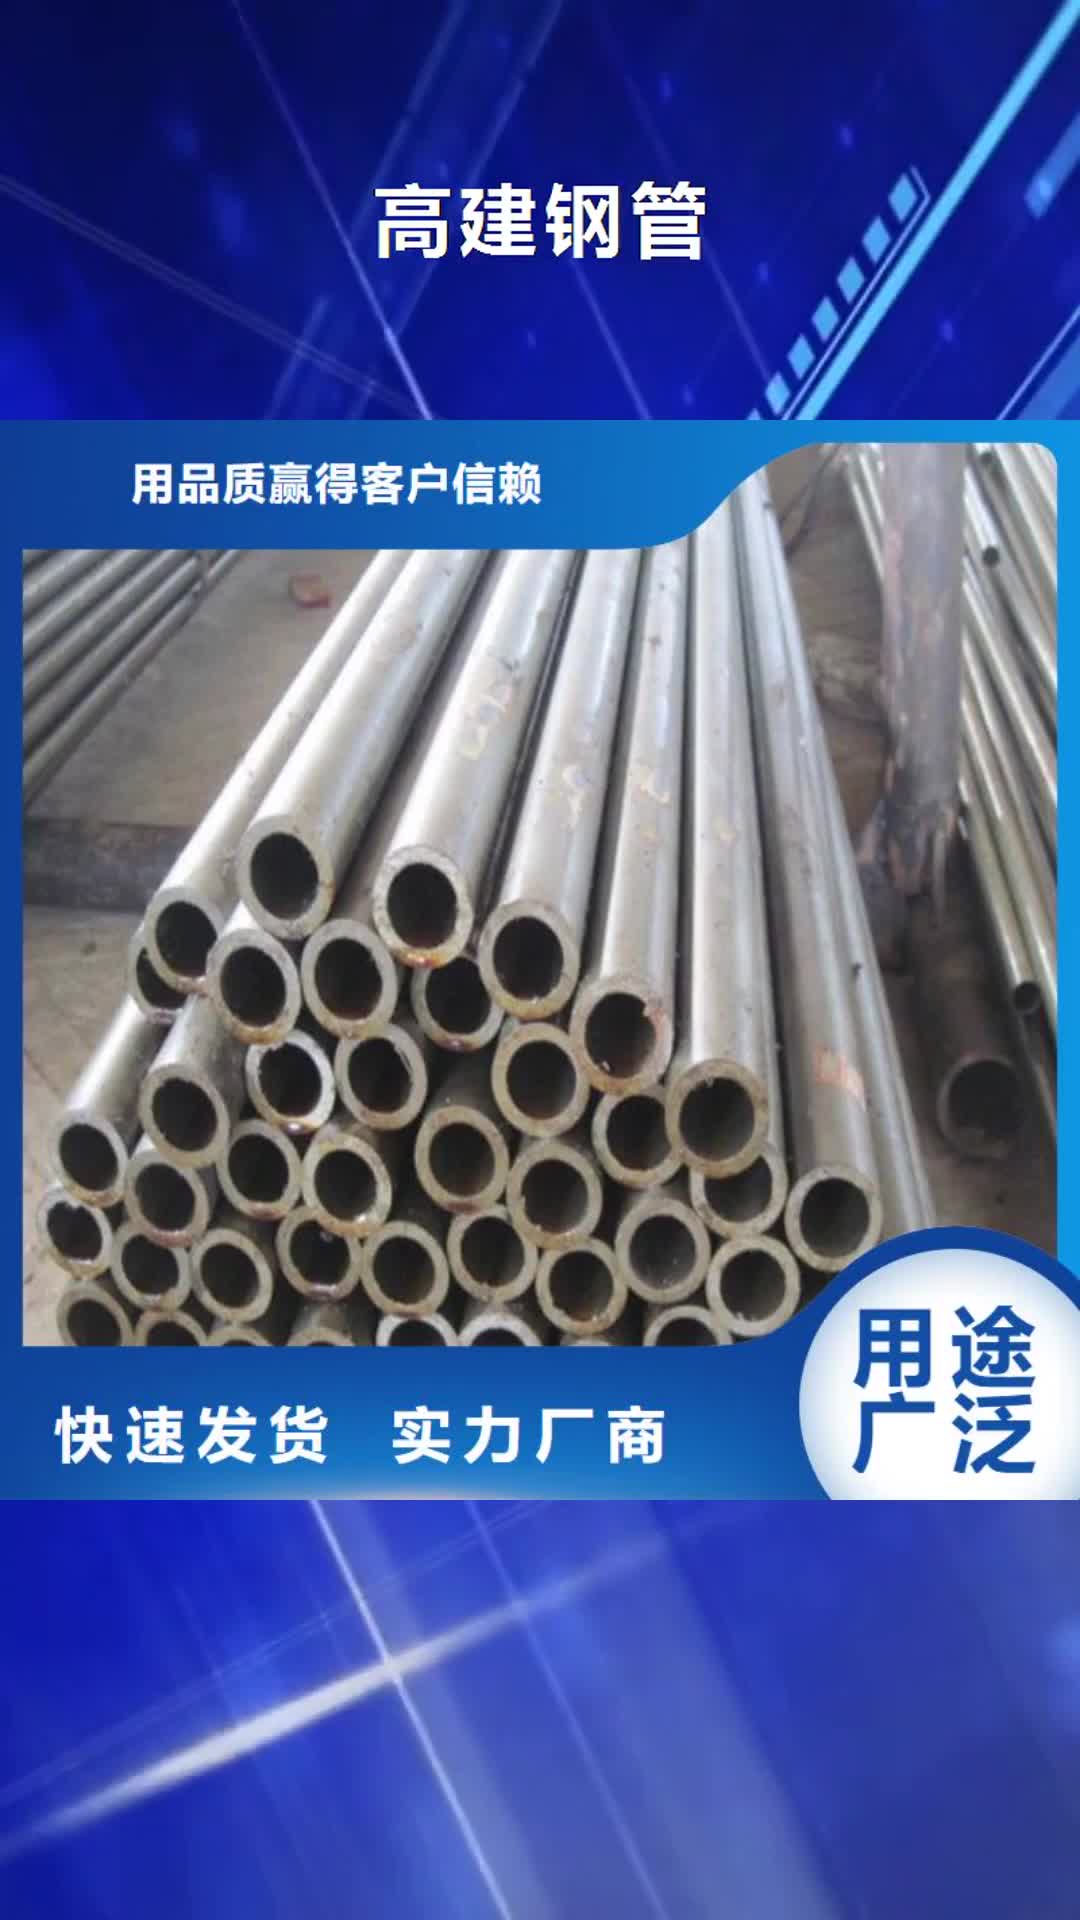 深圳【高建钢管】_压力容器板工厂采购